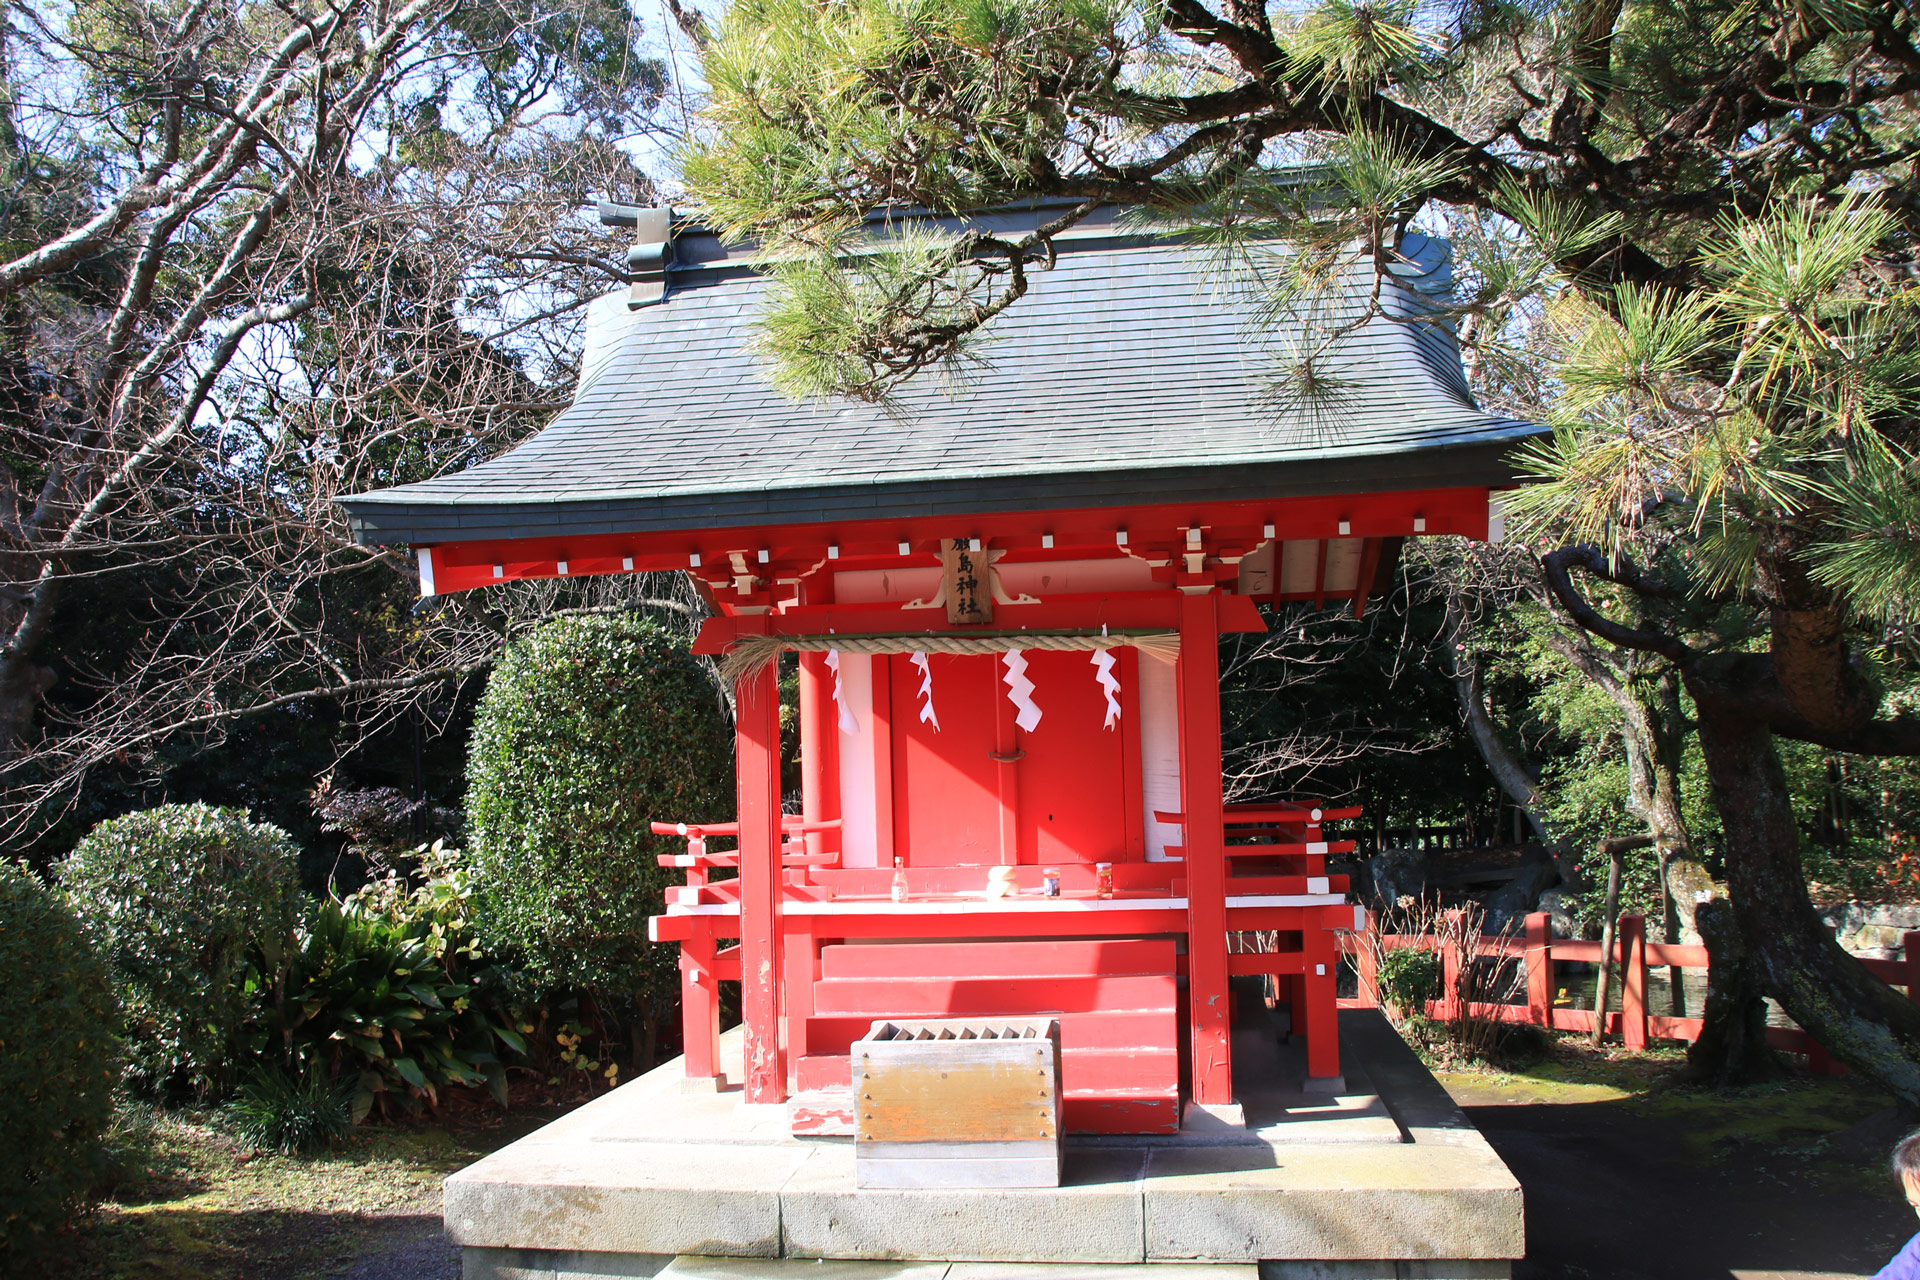 参道の両脇に池があり厳島神社があります。